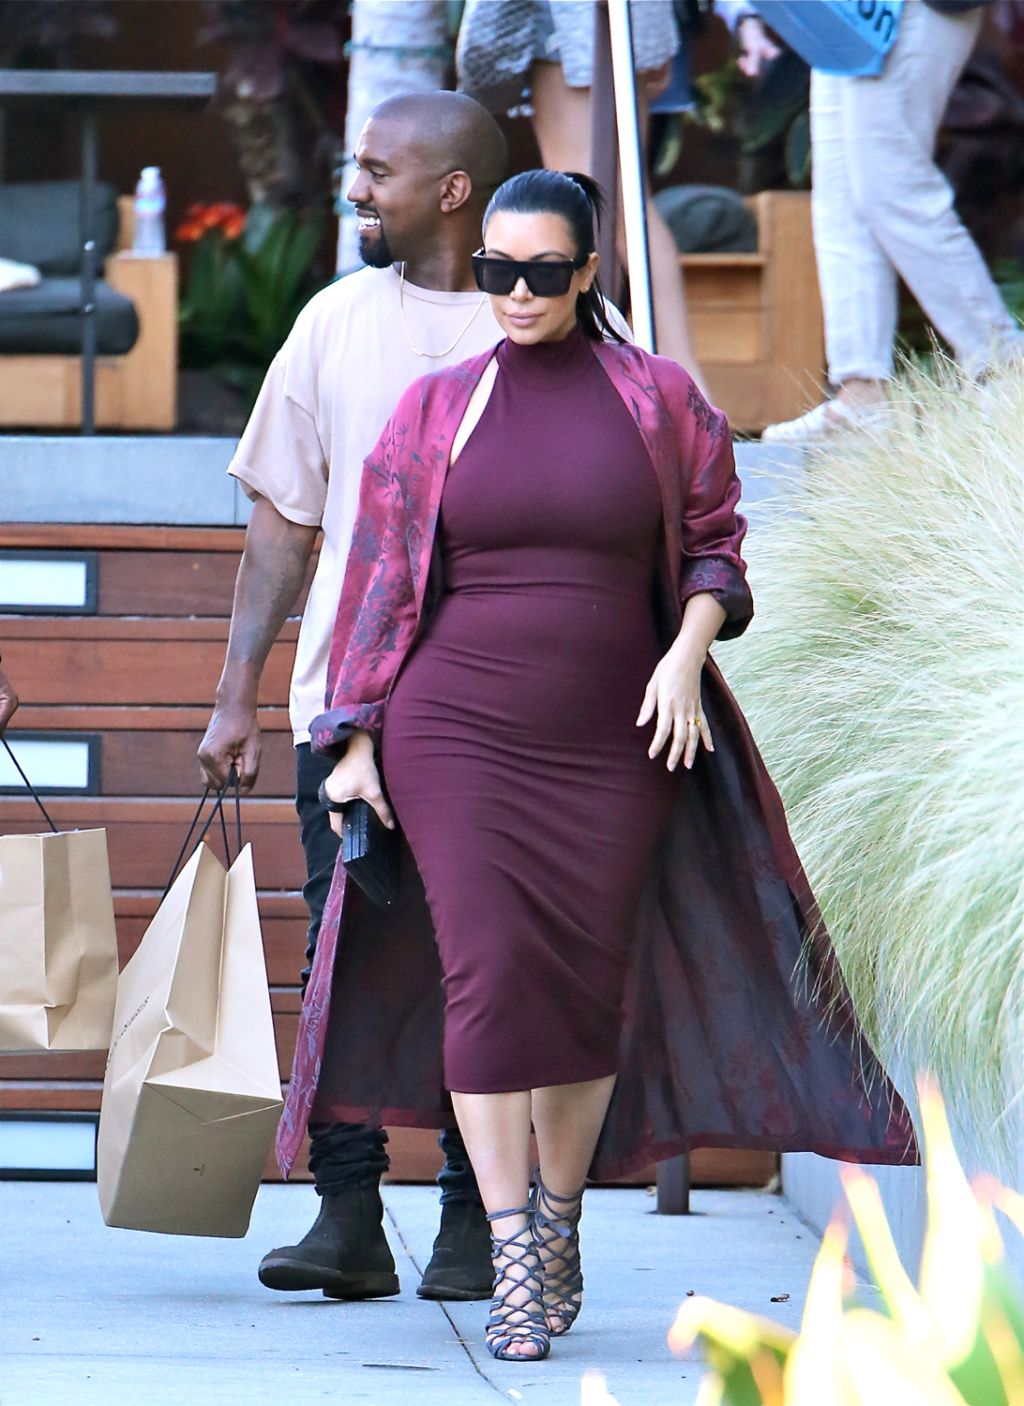 Kim Kardashian, Kanye West, and Steve Stoute eat at Nobu